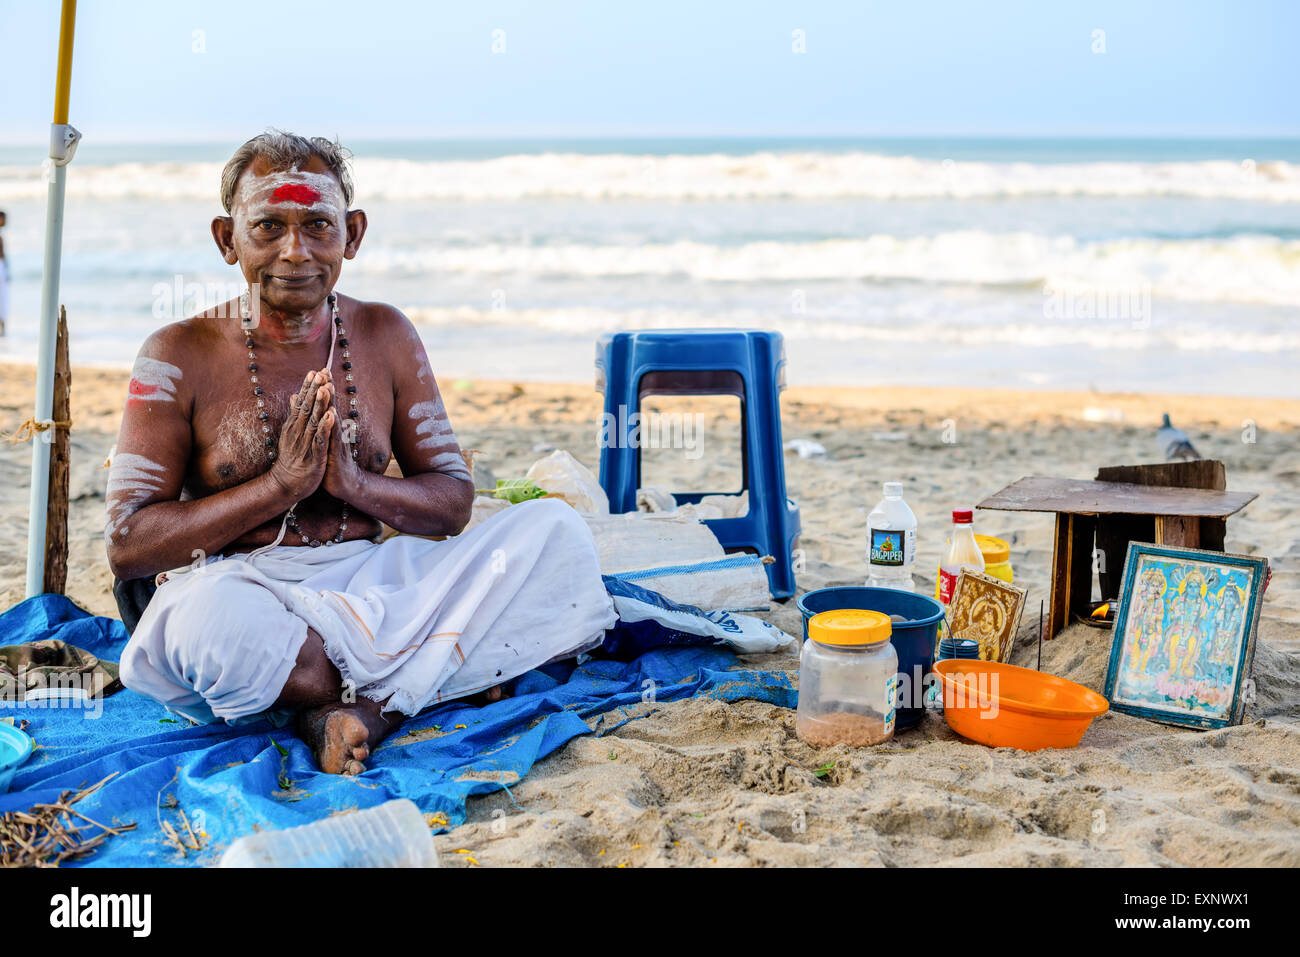 Varkala, India - 22 Febbraio 2013: bramino indù con attributi religiosi si siede in Namaste mudra sulla spiaggia. Varkala Beach, K Foto Stock